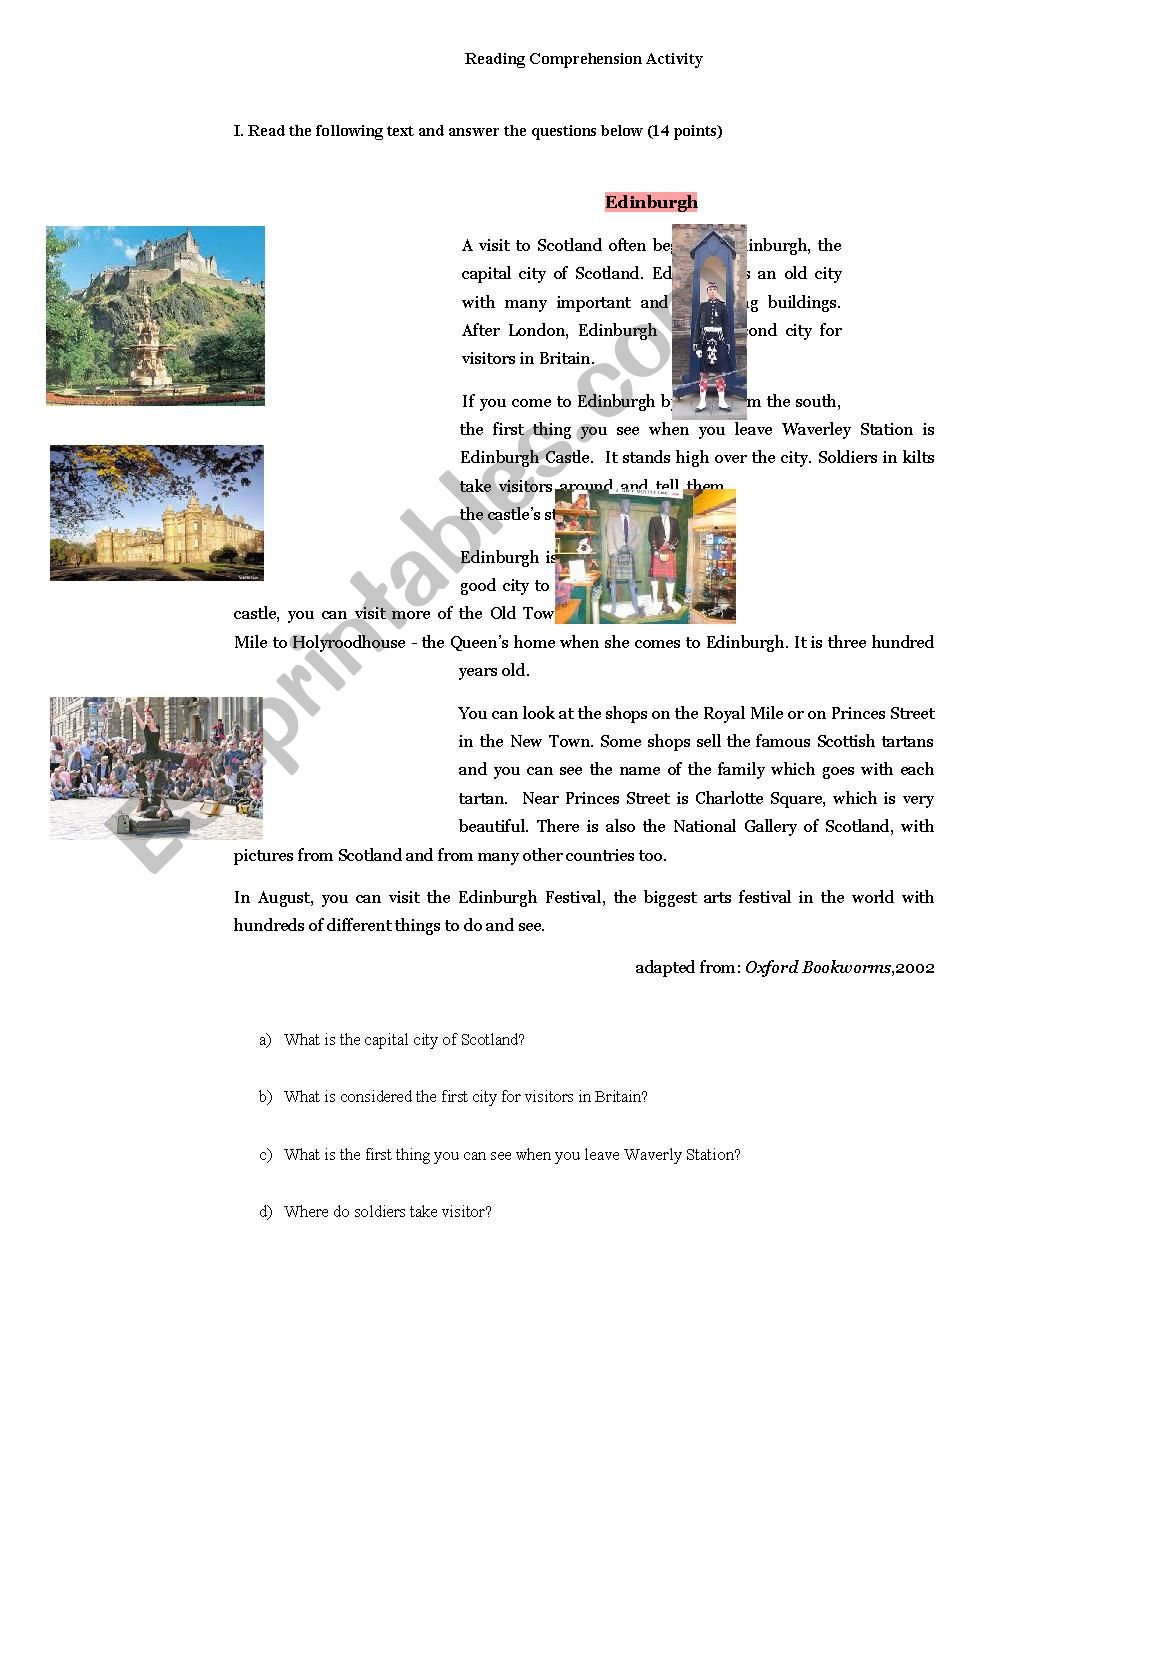 Reading comprehension - city worksheet